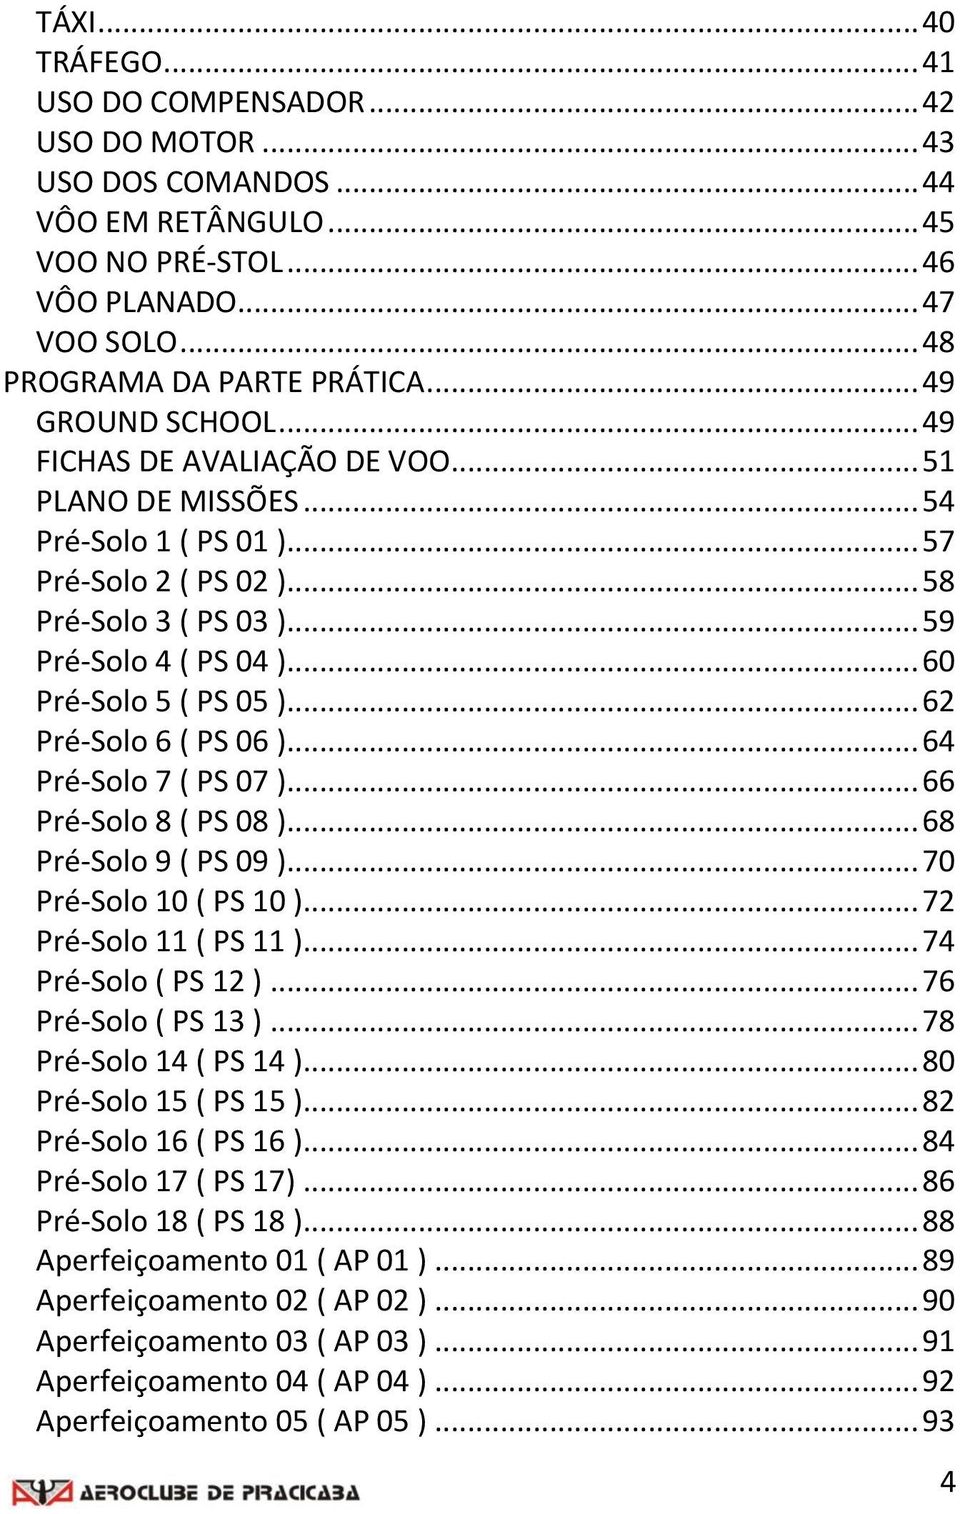 .. 60 Pré-Solo 5 ( PS 05 )... 62 Pré-Solo 6 ( PS 06 )... 64 Pré-Solo 7 ( PS 07 )... 66 Pré-Solo 8 ( PS 08 )... 68 Pré-Solo 9 ( PS 09 )... 70 Pré-Solo 10 ( PS 10 )... 72 Pré-Solo 11 ( PS 11 ).